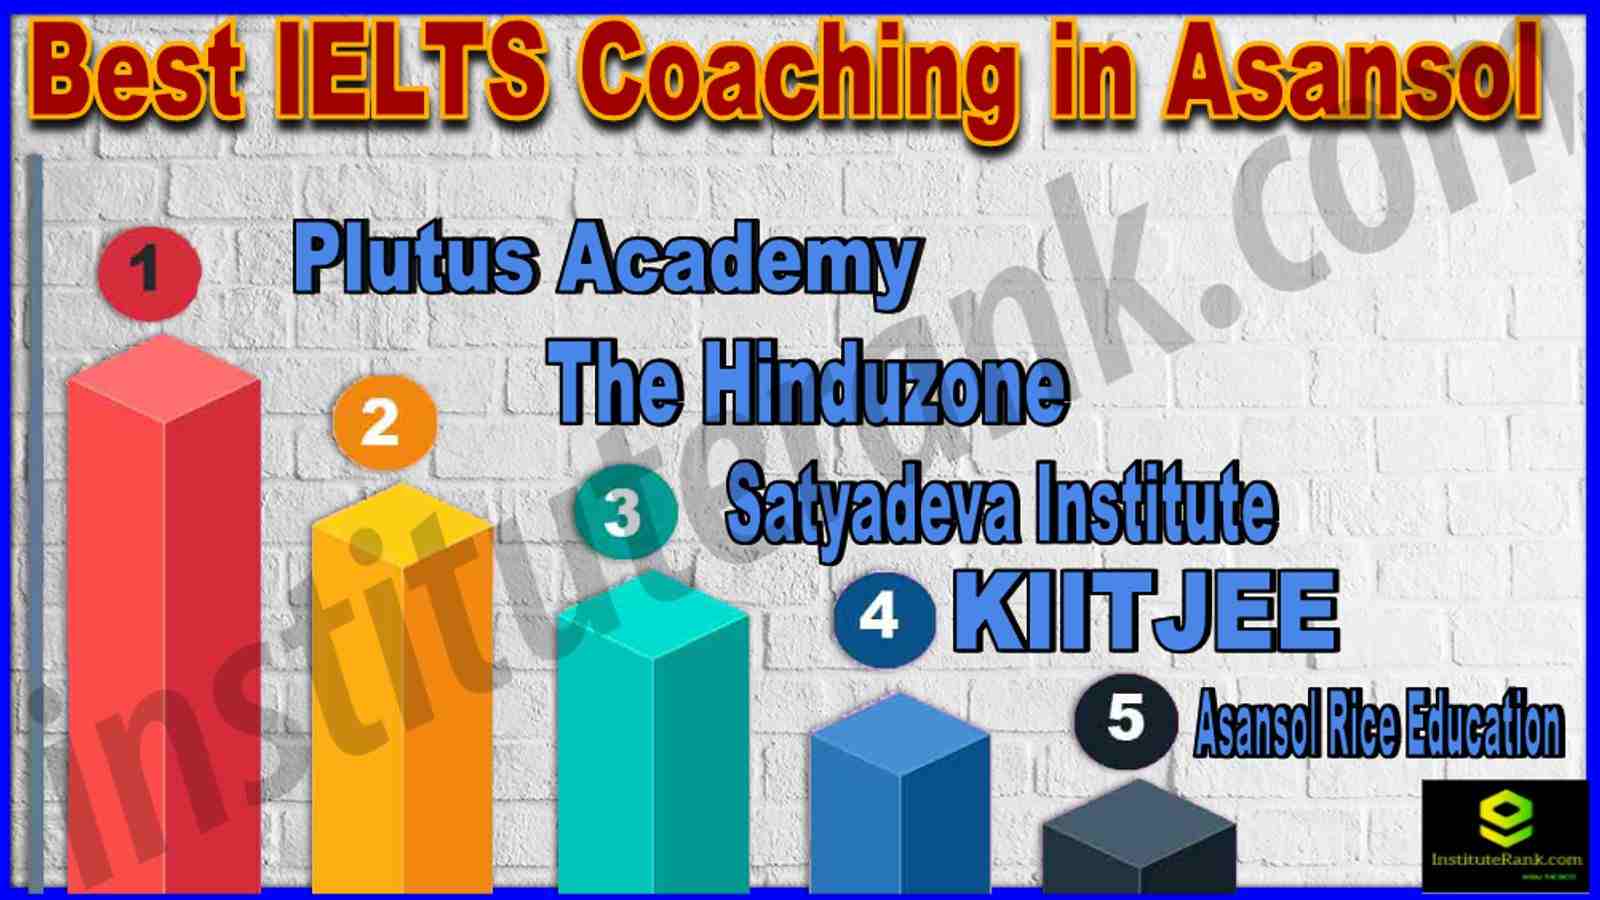 Best IELTS Coaching in Asansol